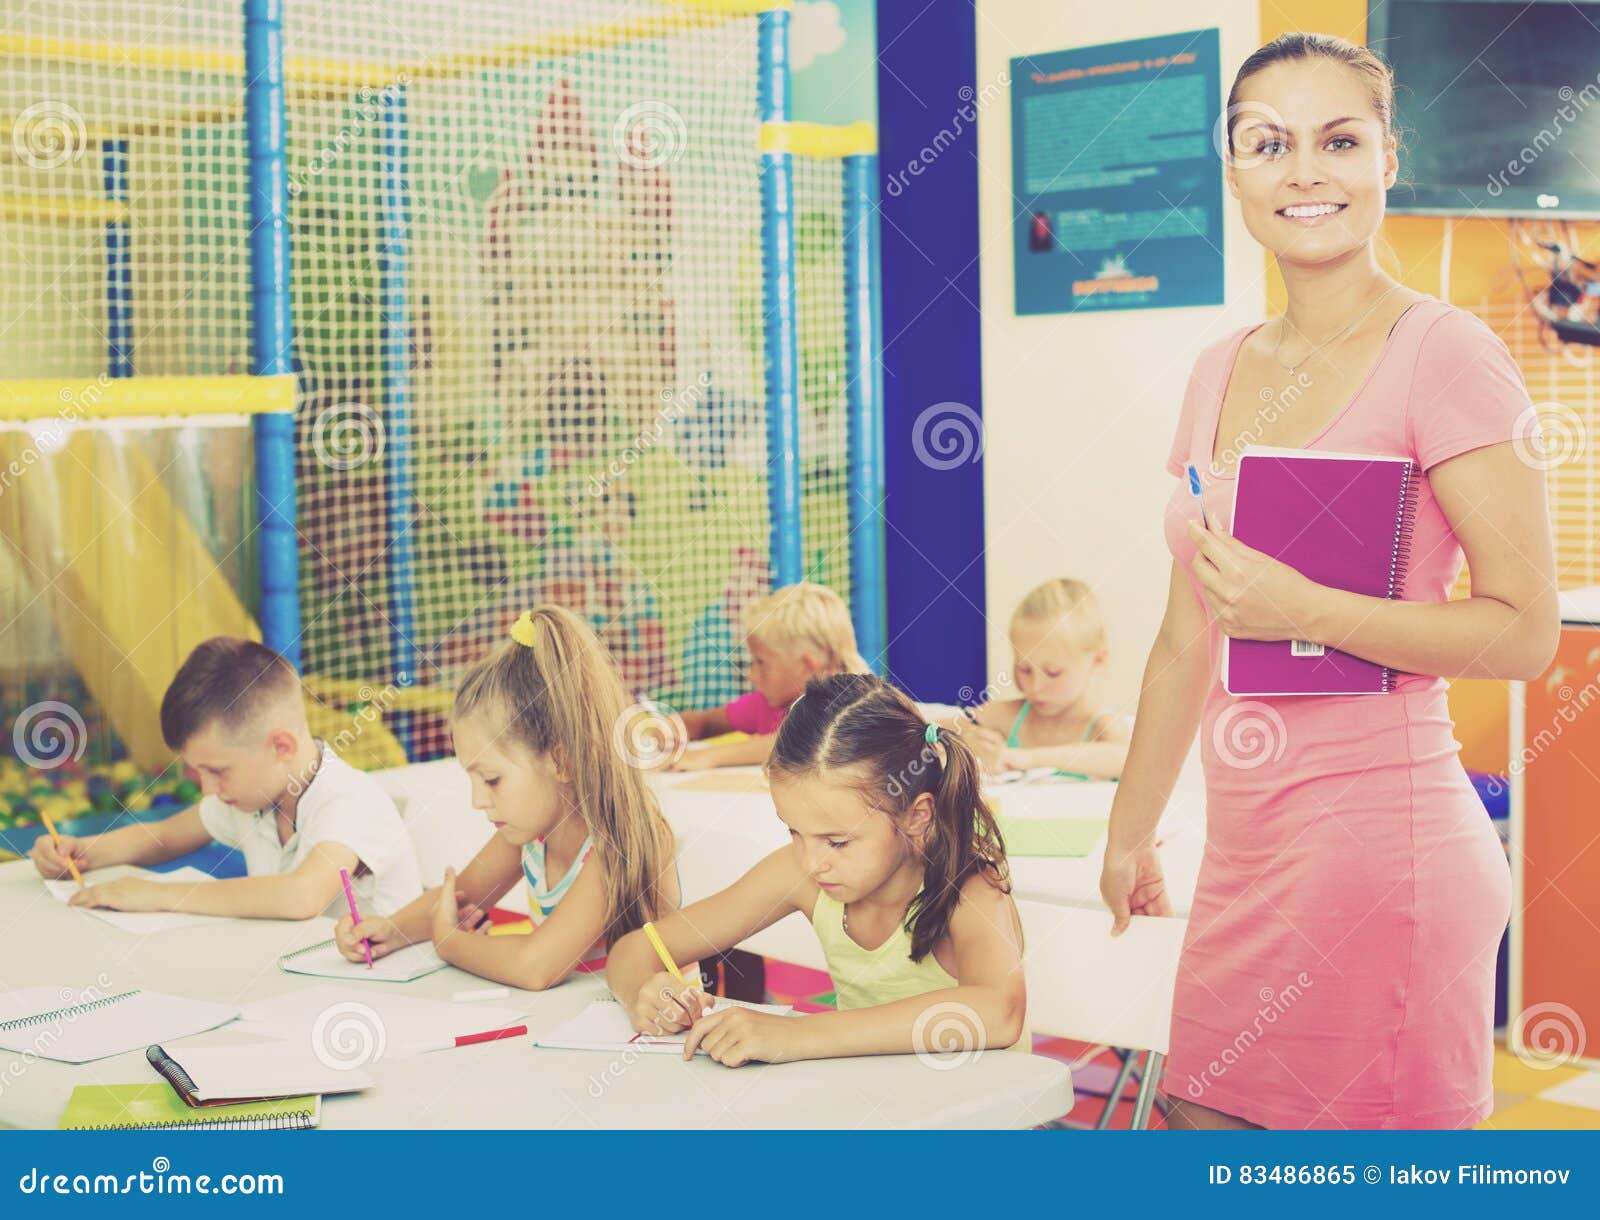 young-smiling-woman-teacher-standing-textbook-women-school-class-kids-83486865.jpg